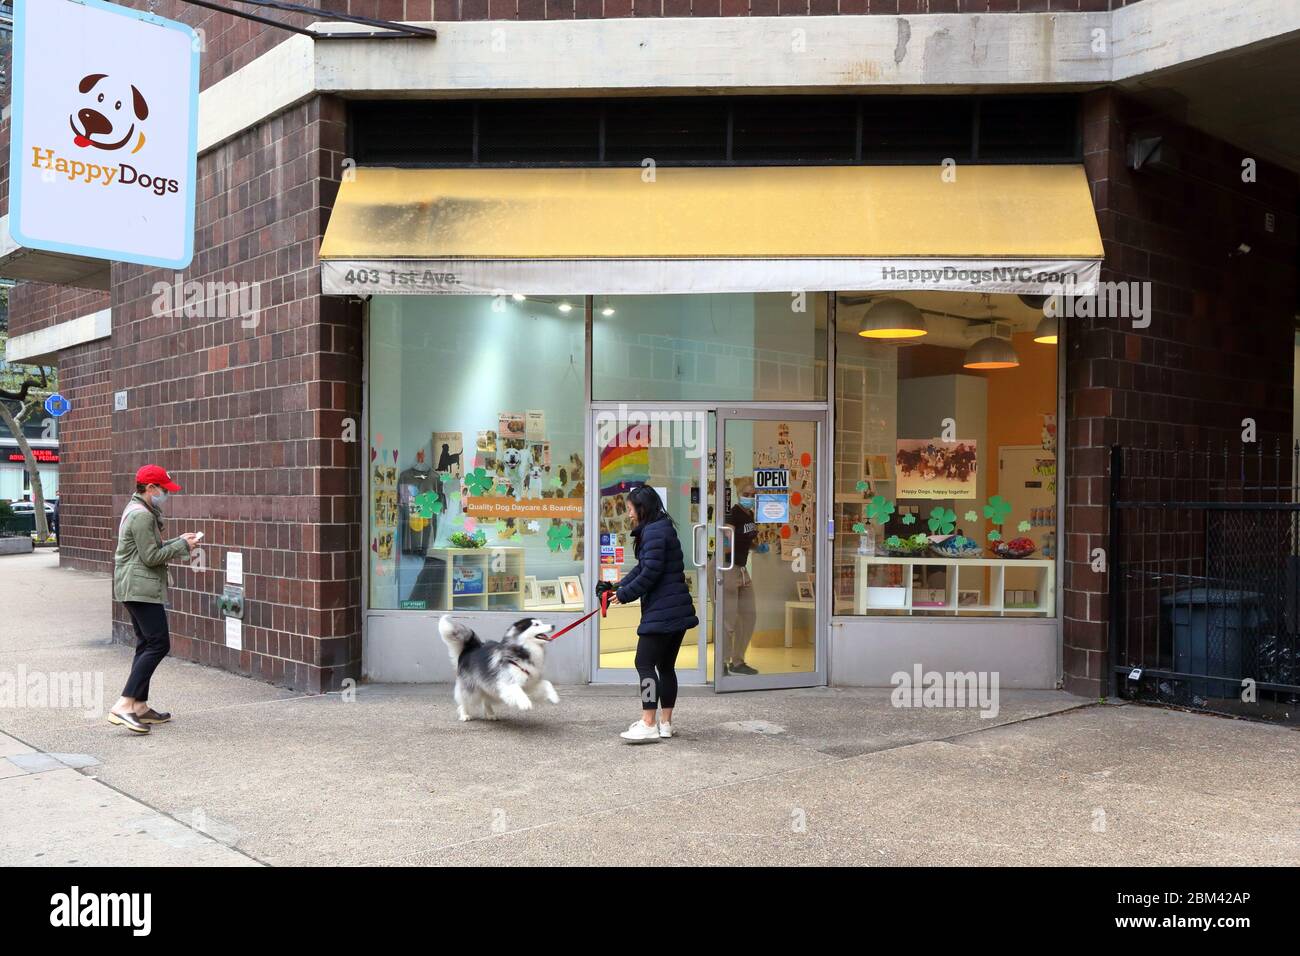 Happy Dogs, 403 1st Avenue, Nueva York, NY. Escaparate exterior de un cuidado de día de perrito en Manhattan. Foto de stock